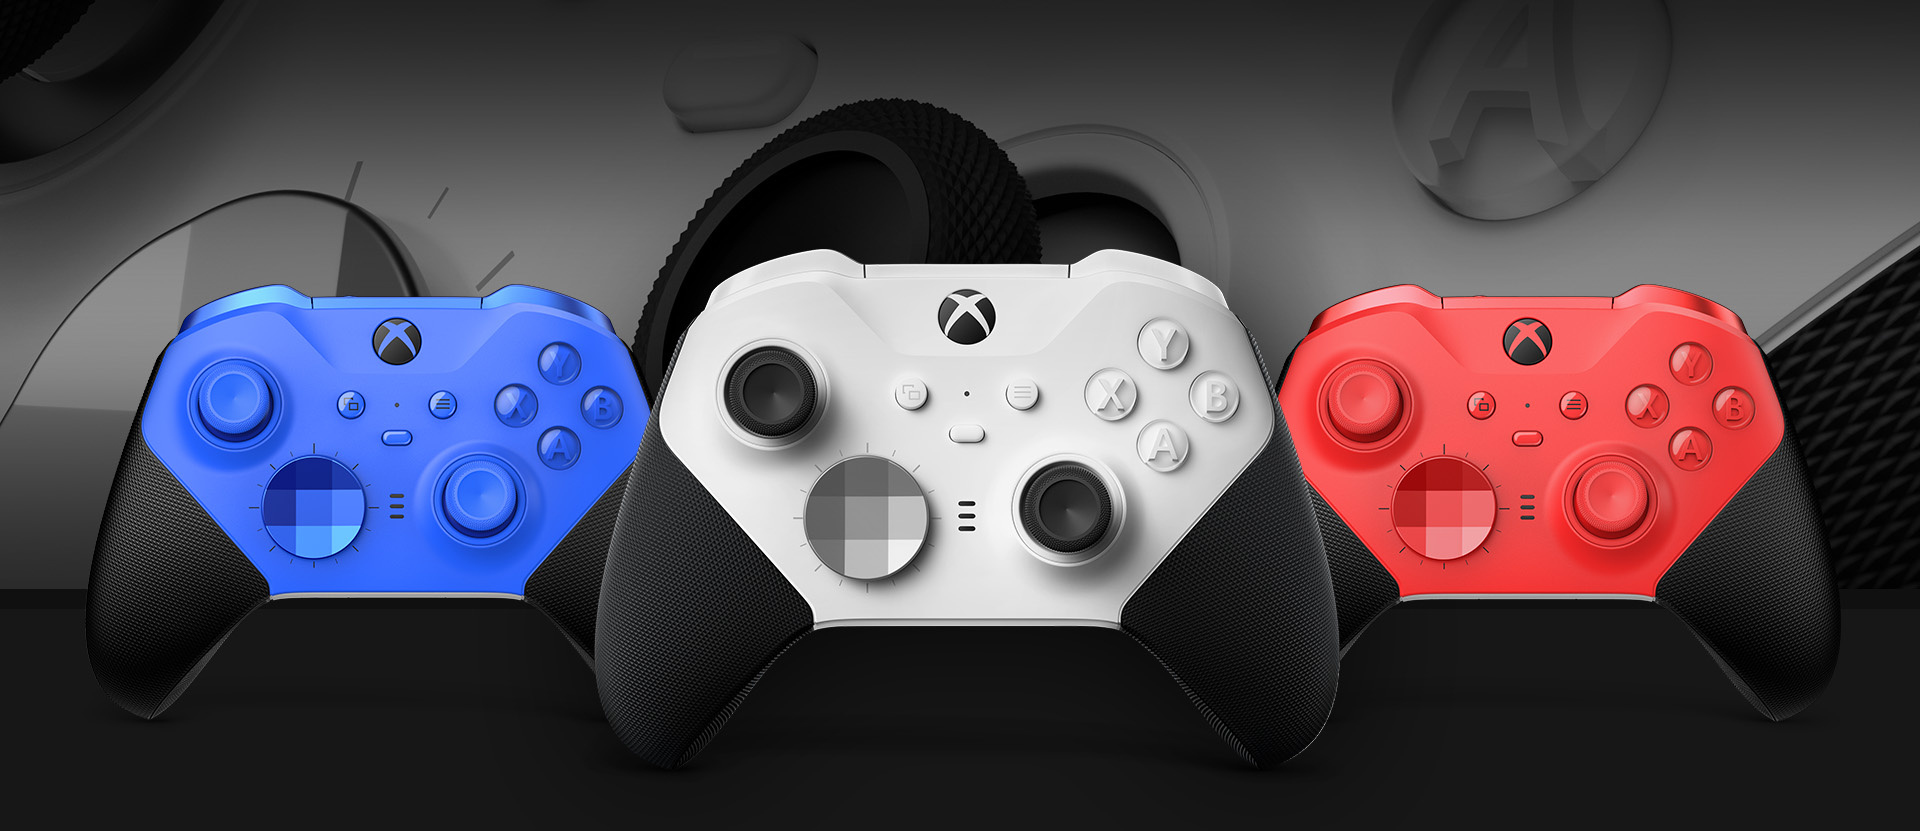 다른 색 옵션이 옆에 표시된 Xbox Elite 무선 컨트롤러 Series 2 - 코어(흰색)를 앞에서 본 모습. 배경에는 클로즈업된 컨트롤러 엄지스틱과 텍스처형 그립이 보입니다.